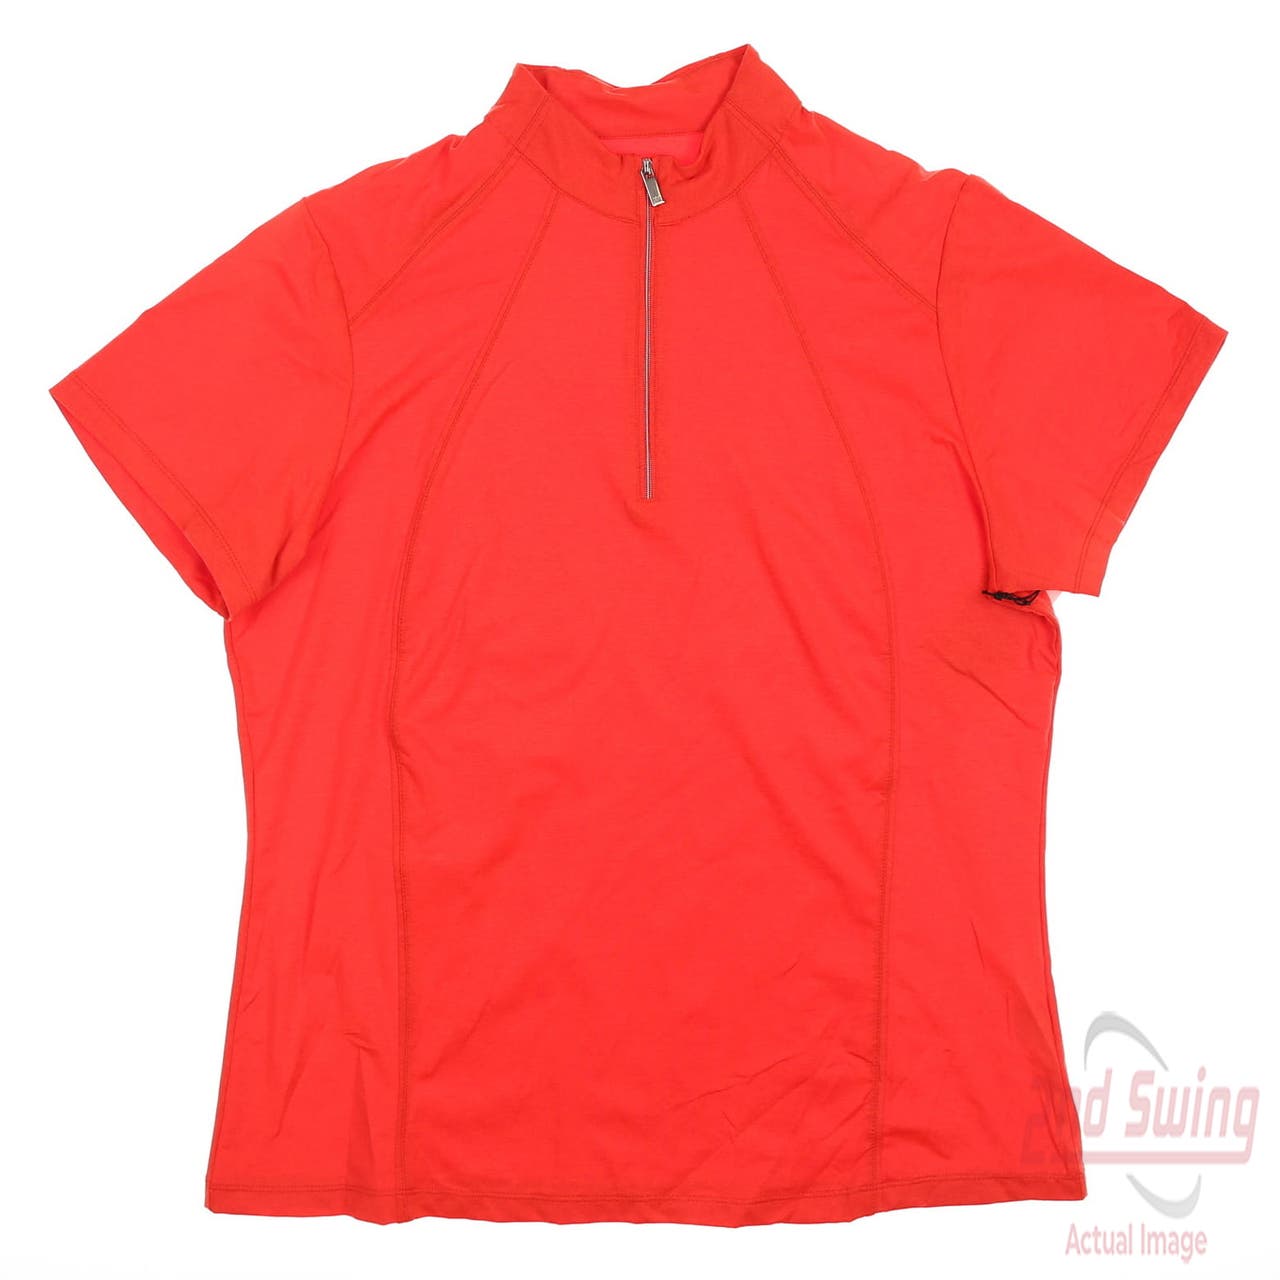 Preloved Women's Shirt - Red - M